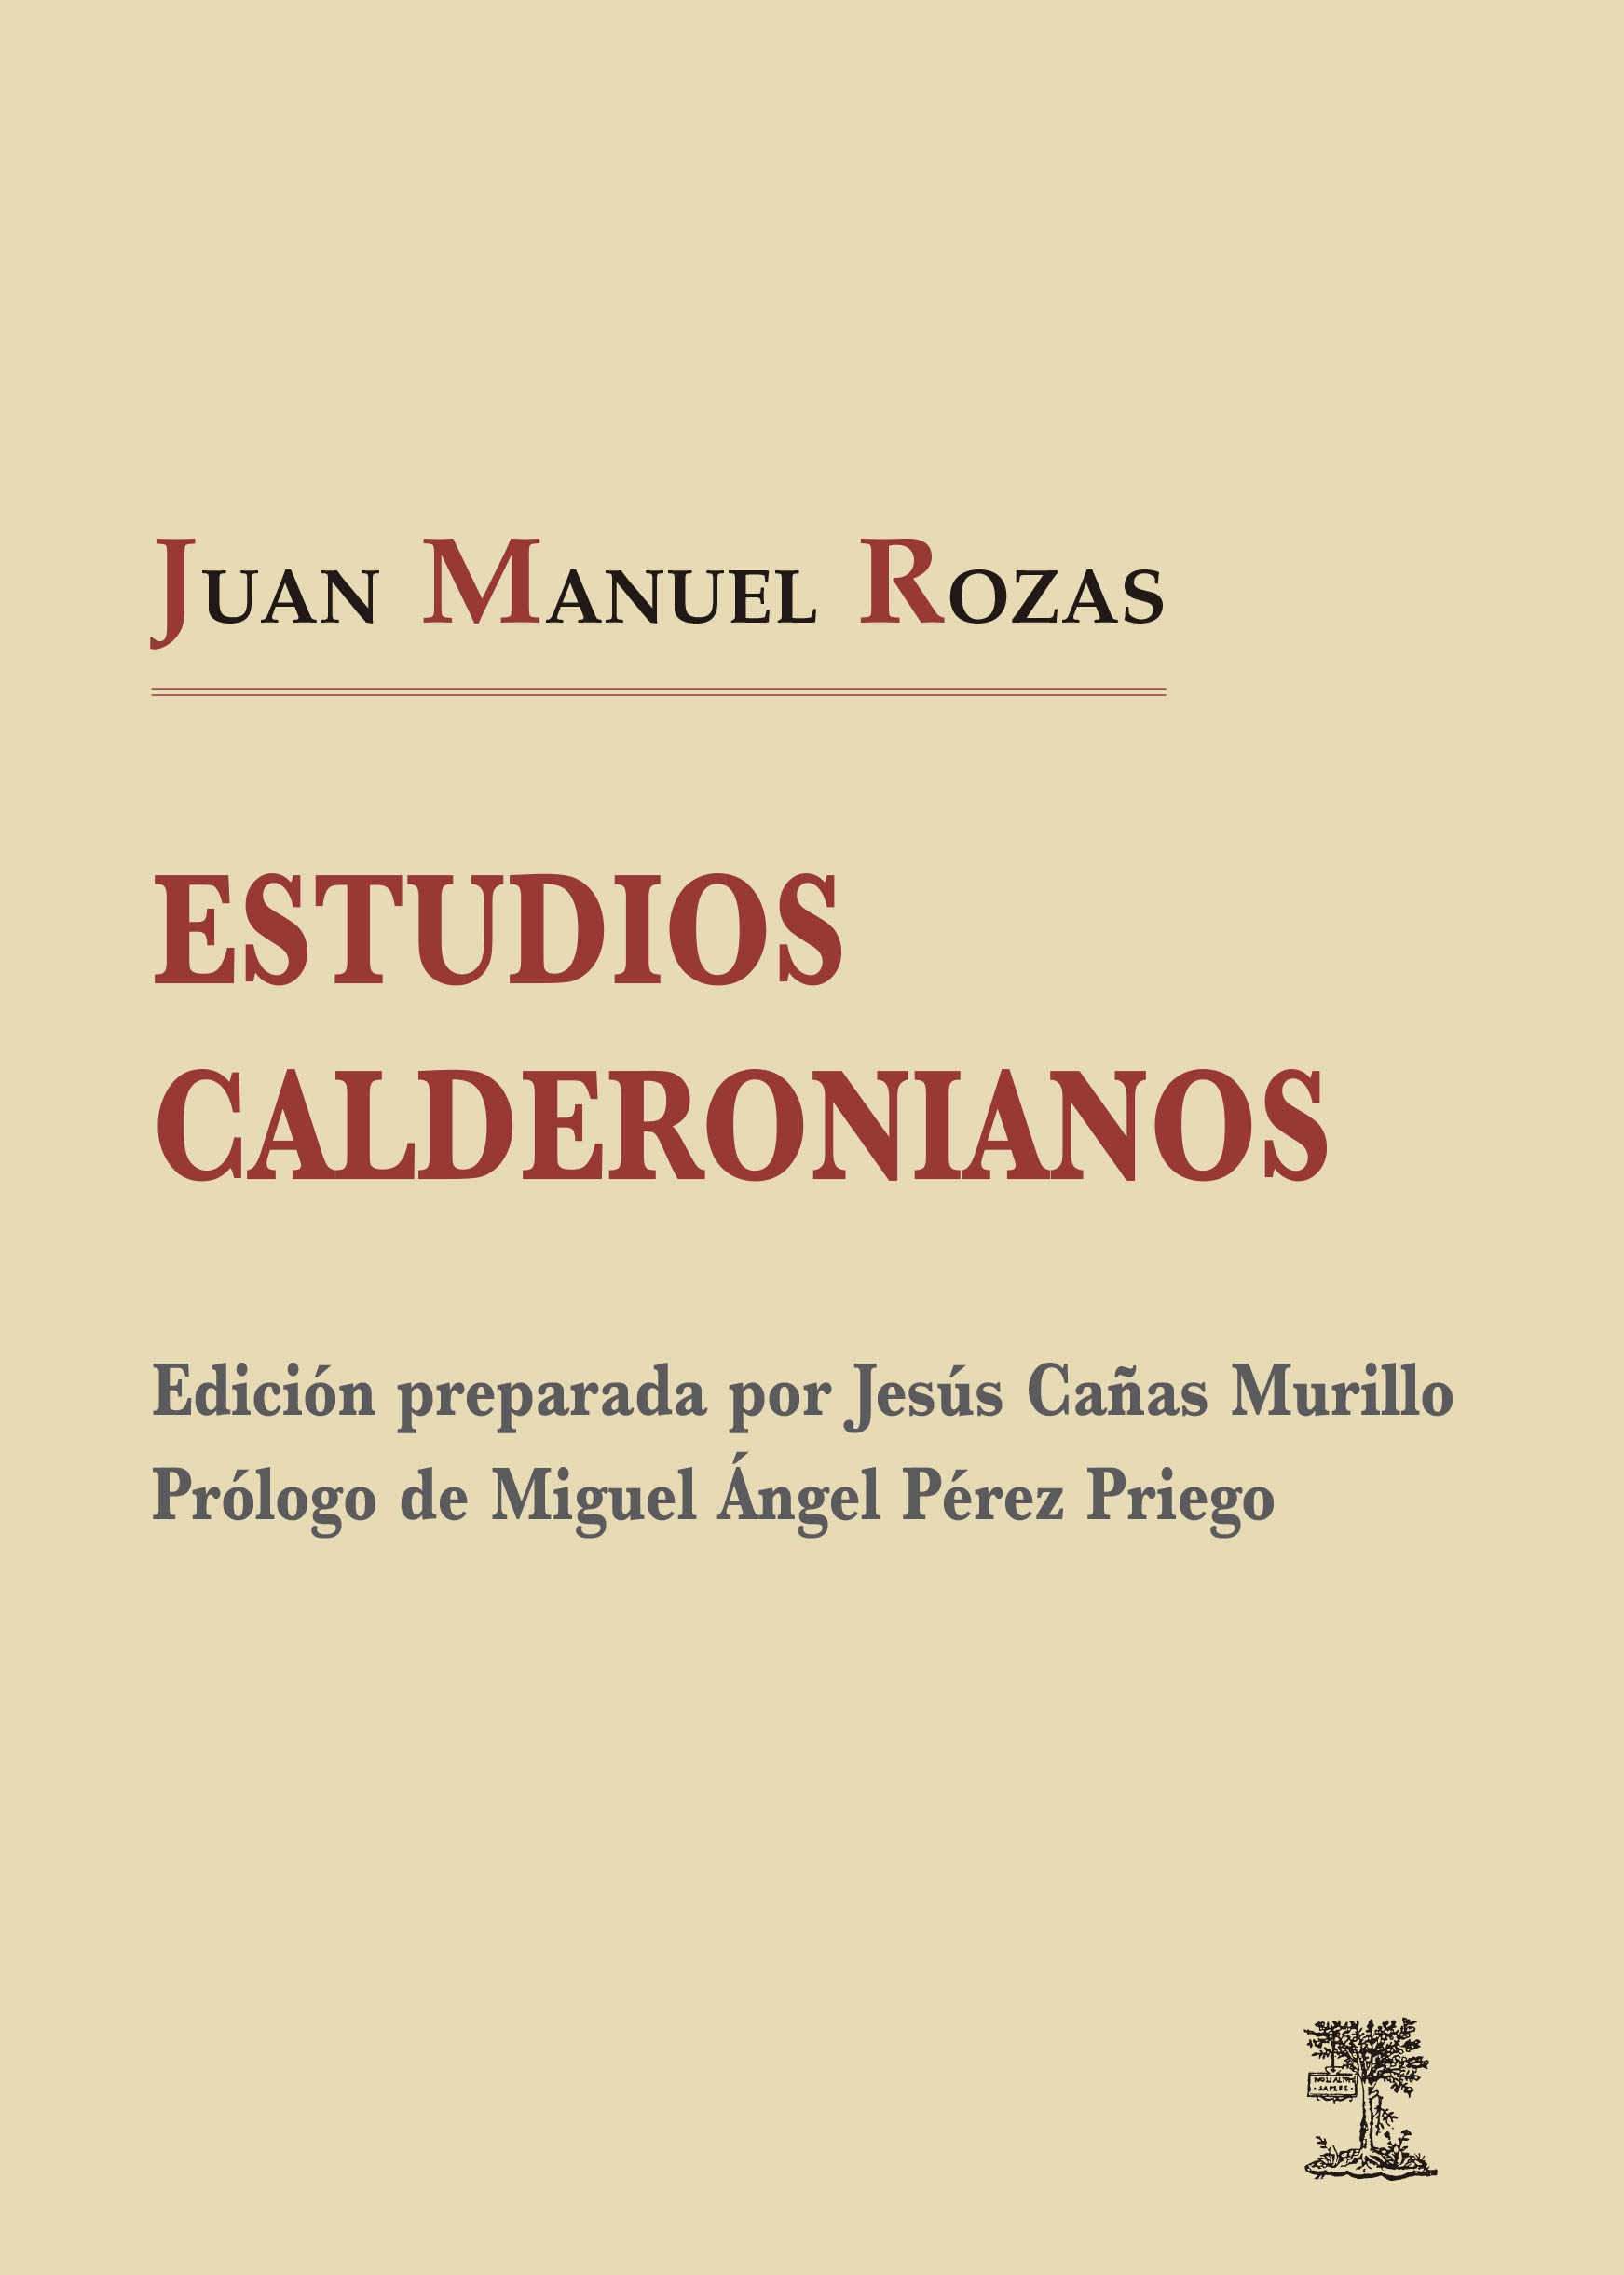 Imagen de portada del libro Estudios calderonianos